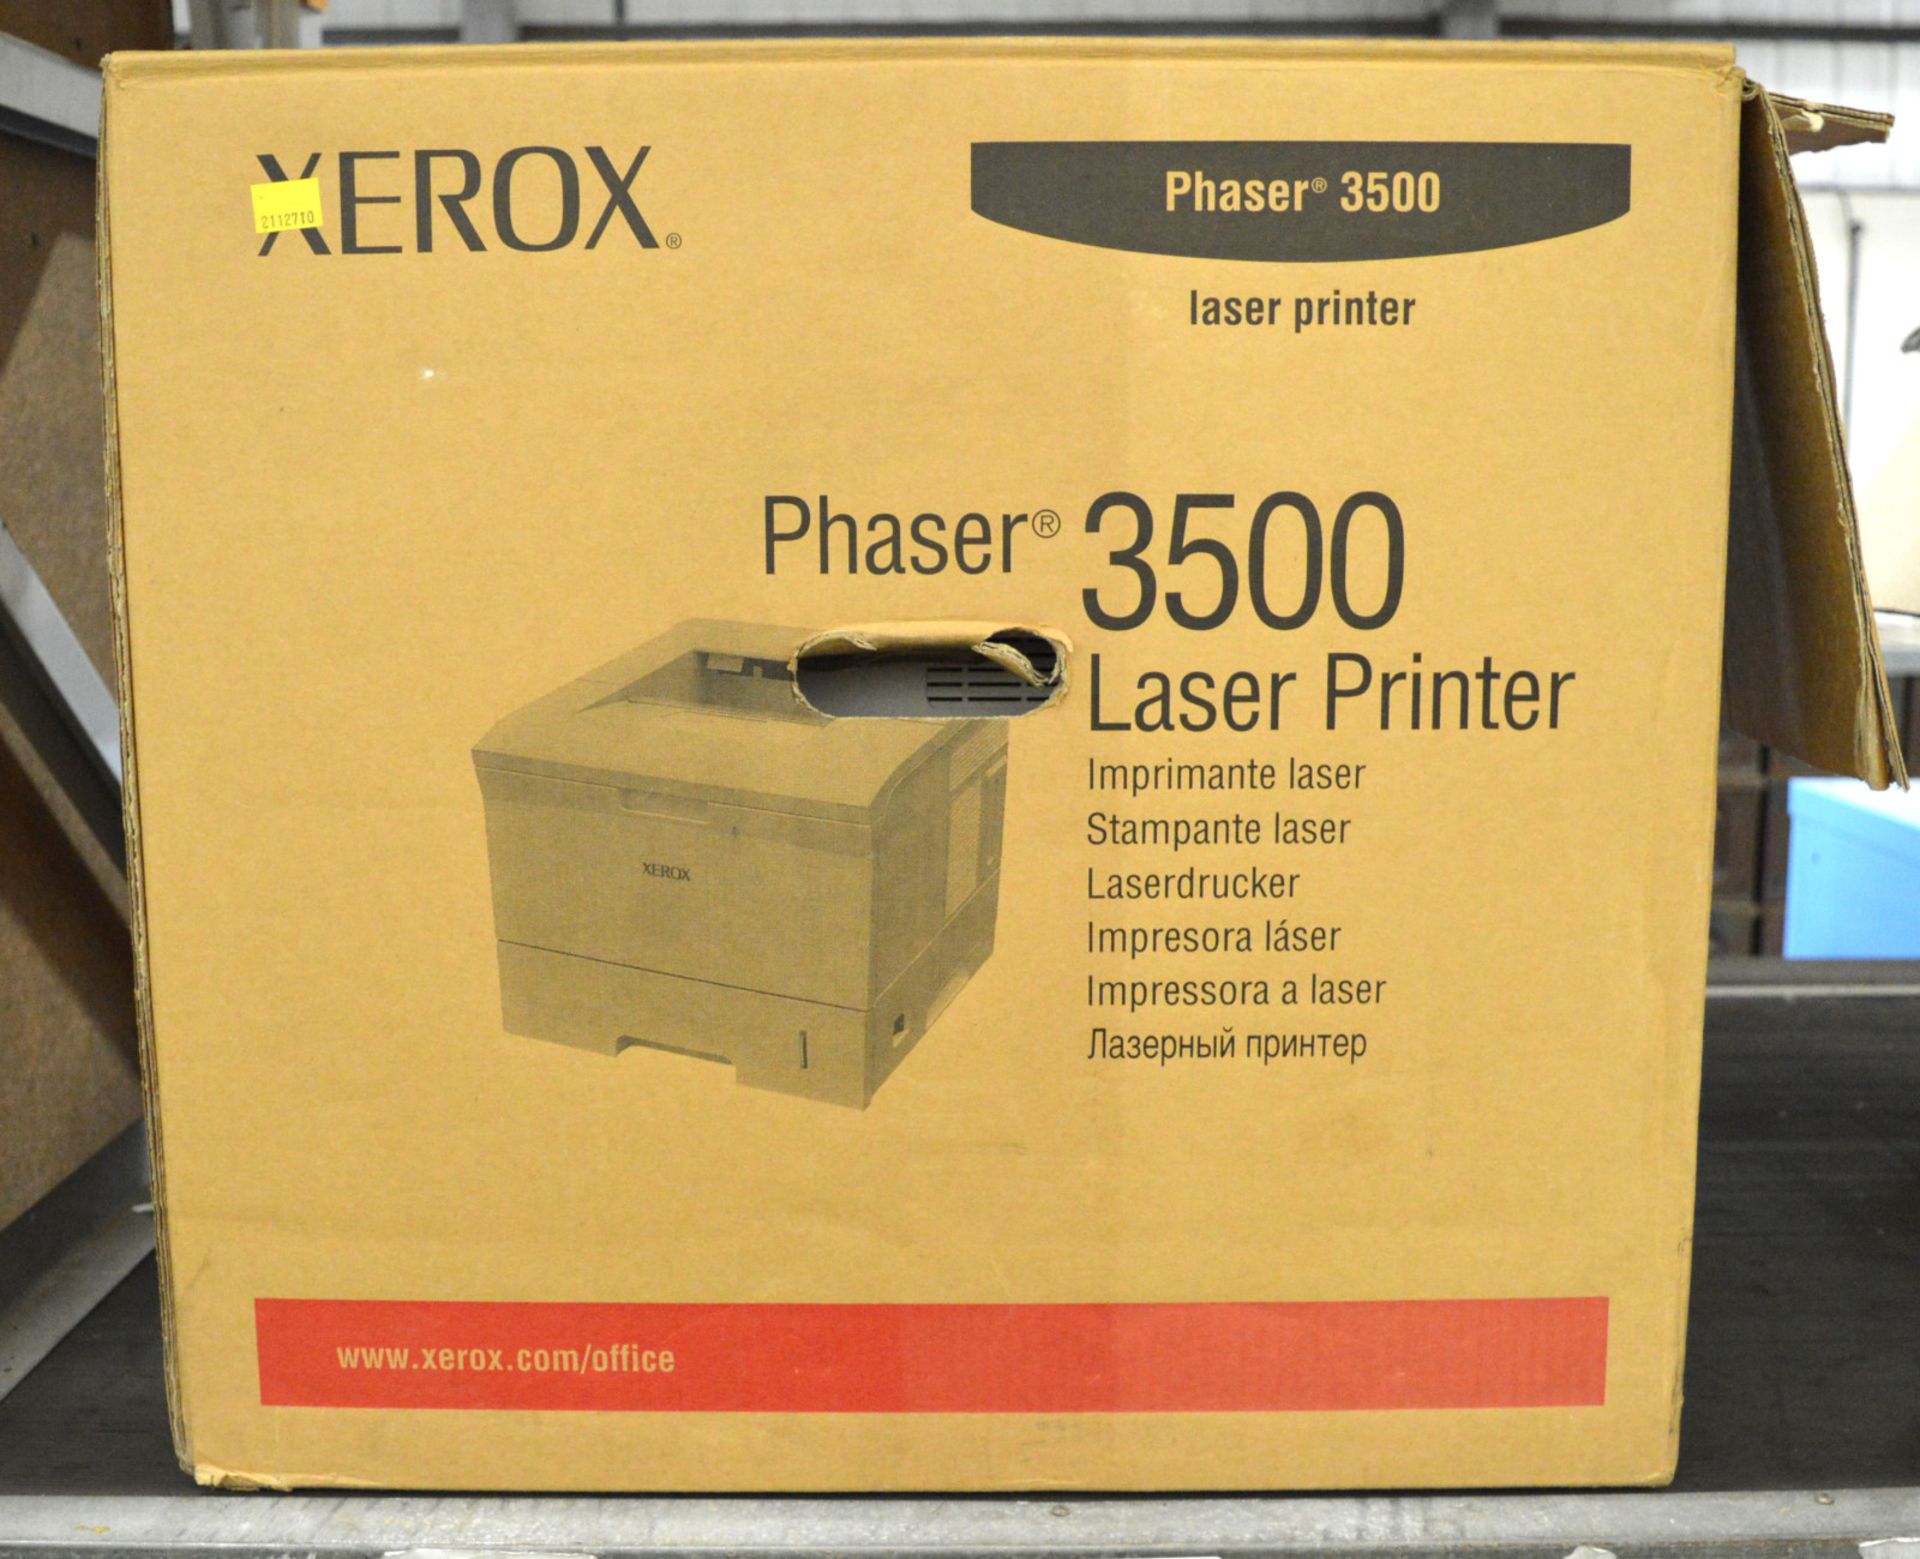 Xerox Phaser 3500 Laser Printer. - Bild 6 aus 6